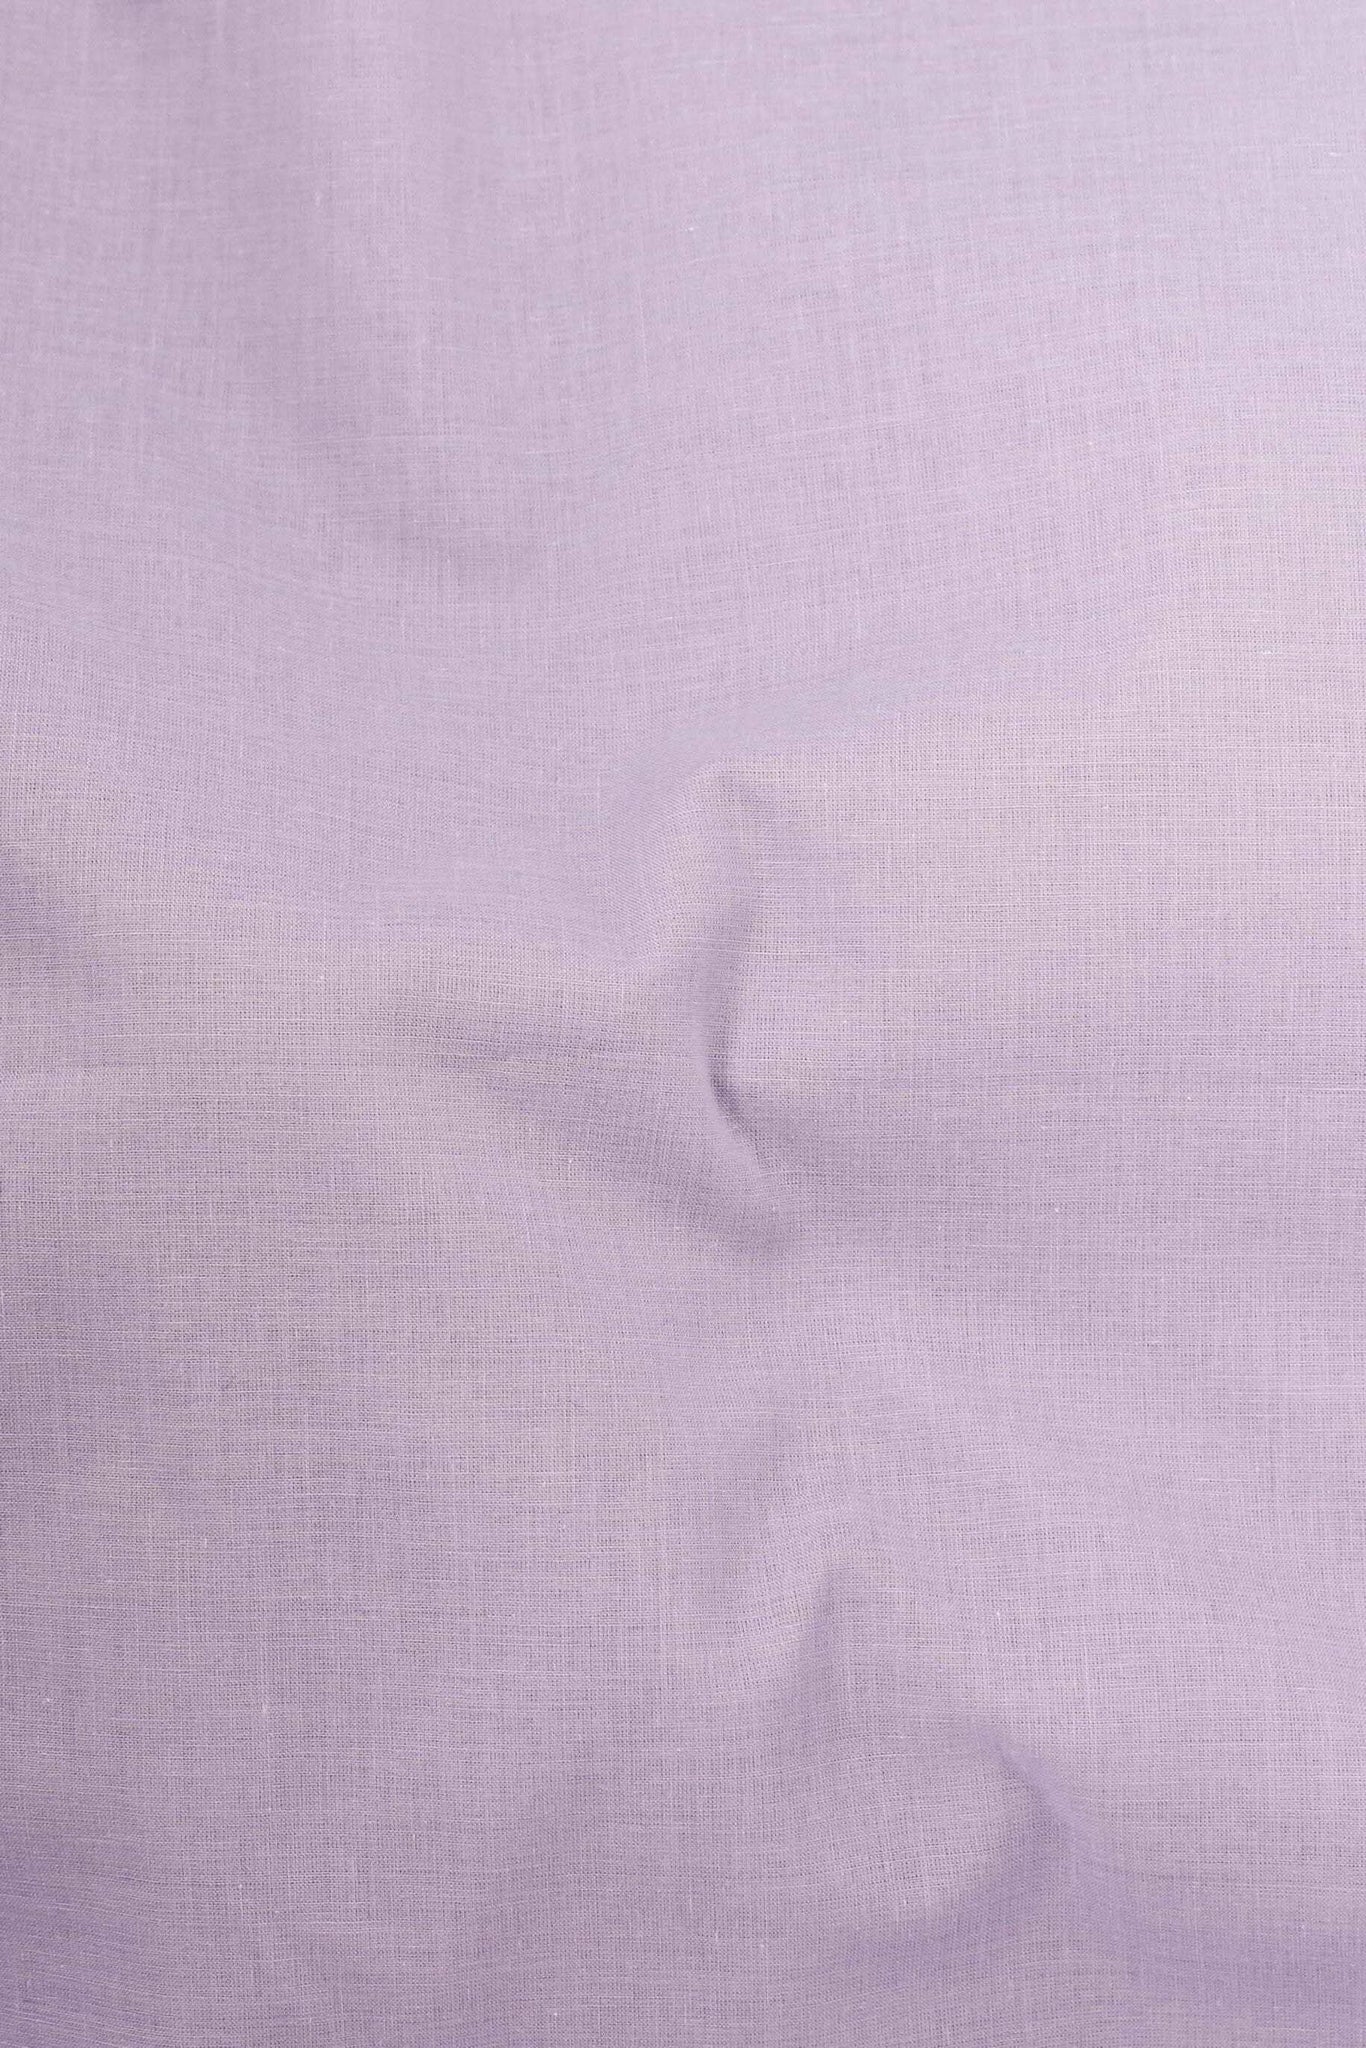 Cotton Voile Solid Light Lavender